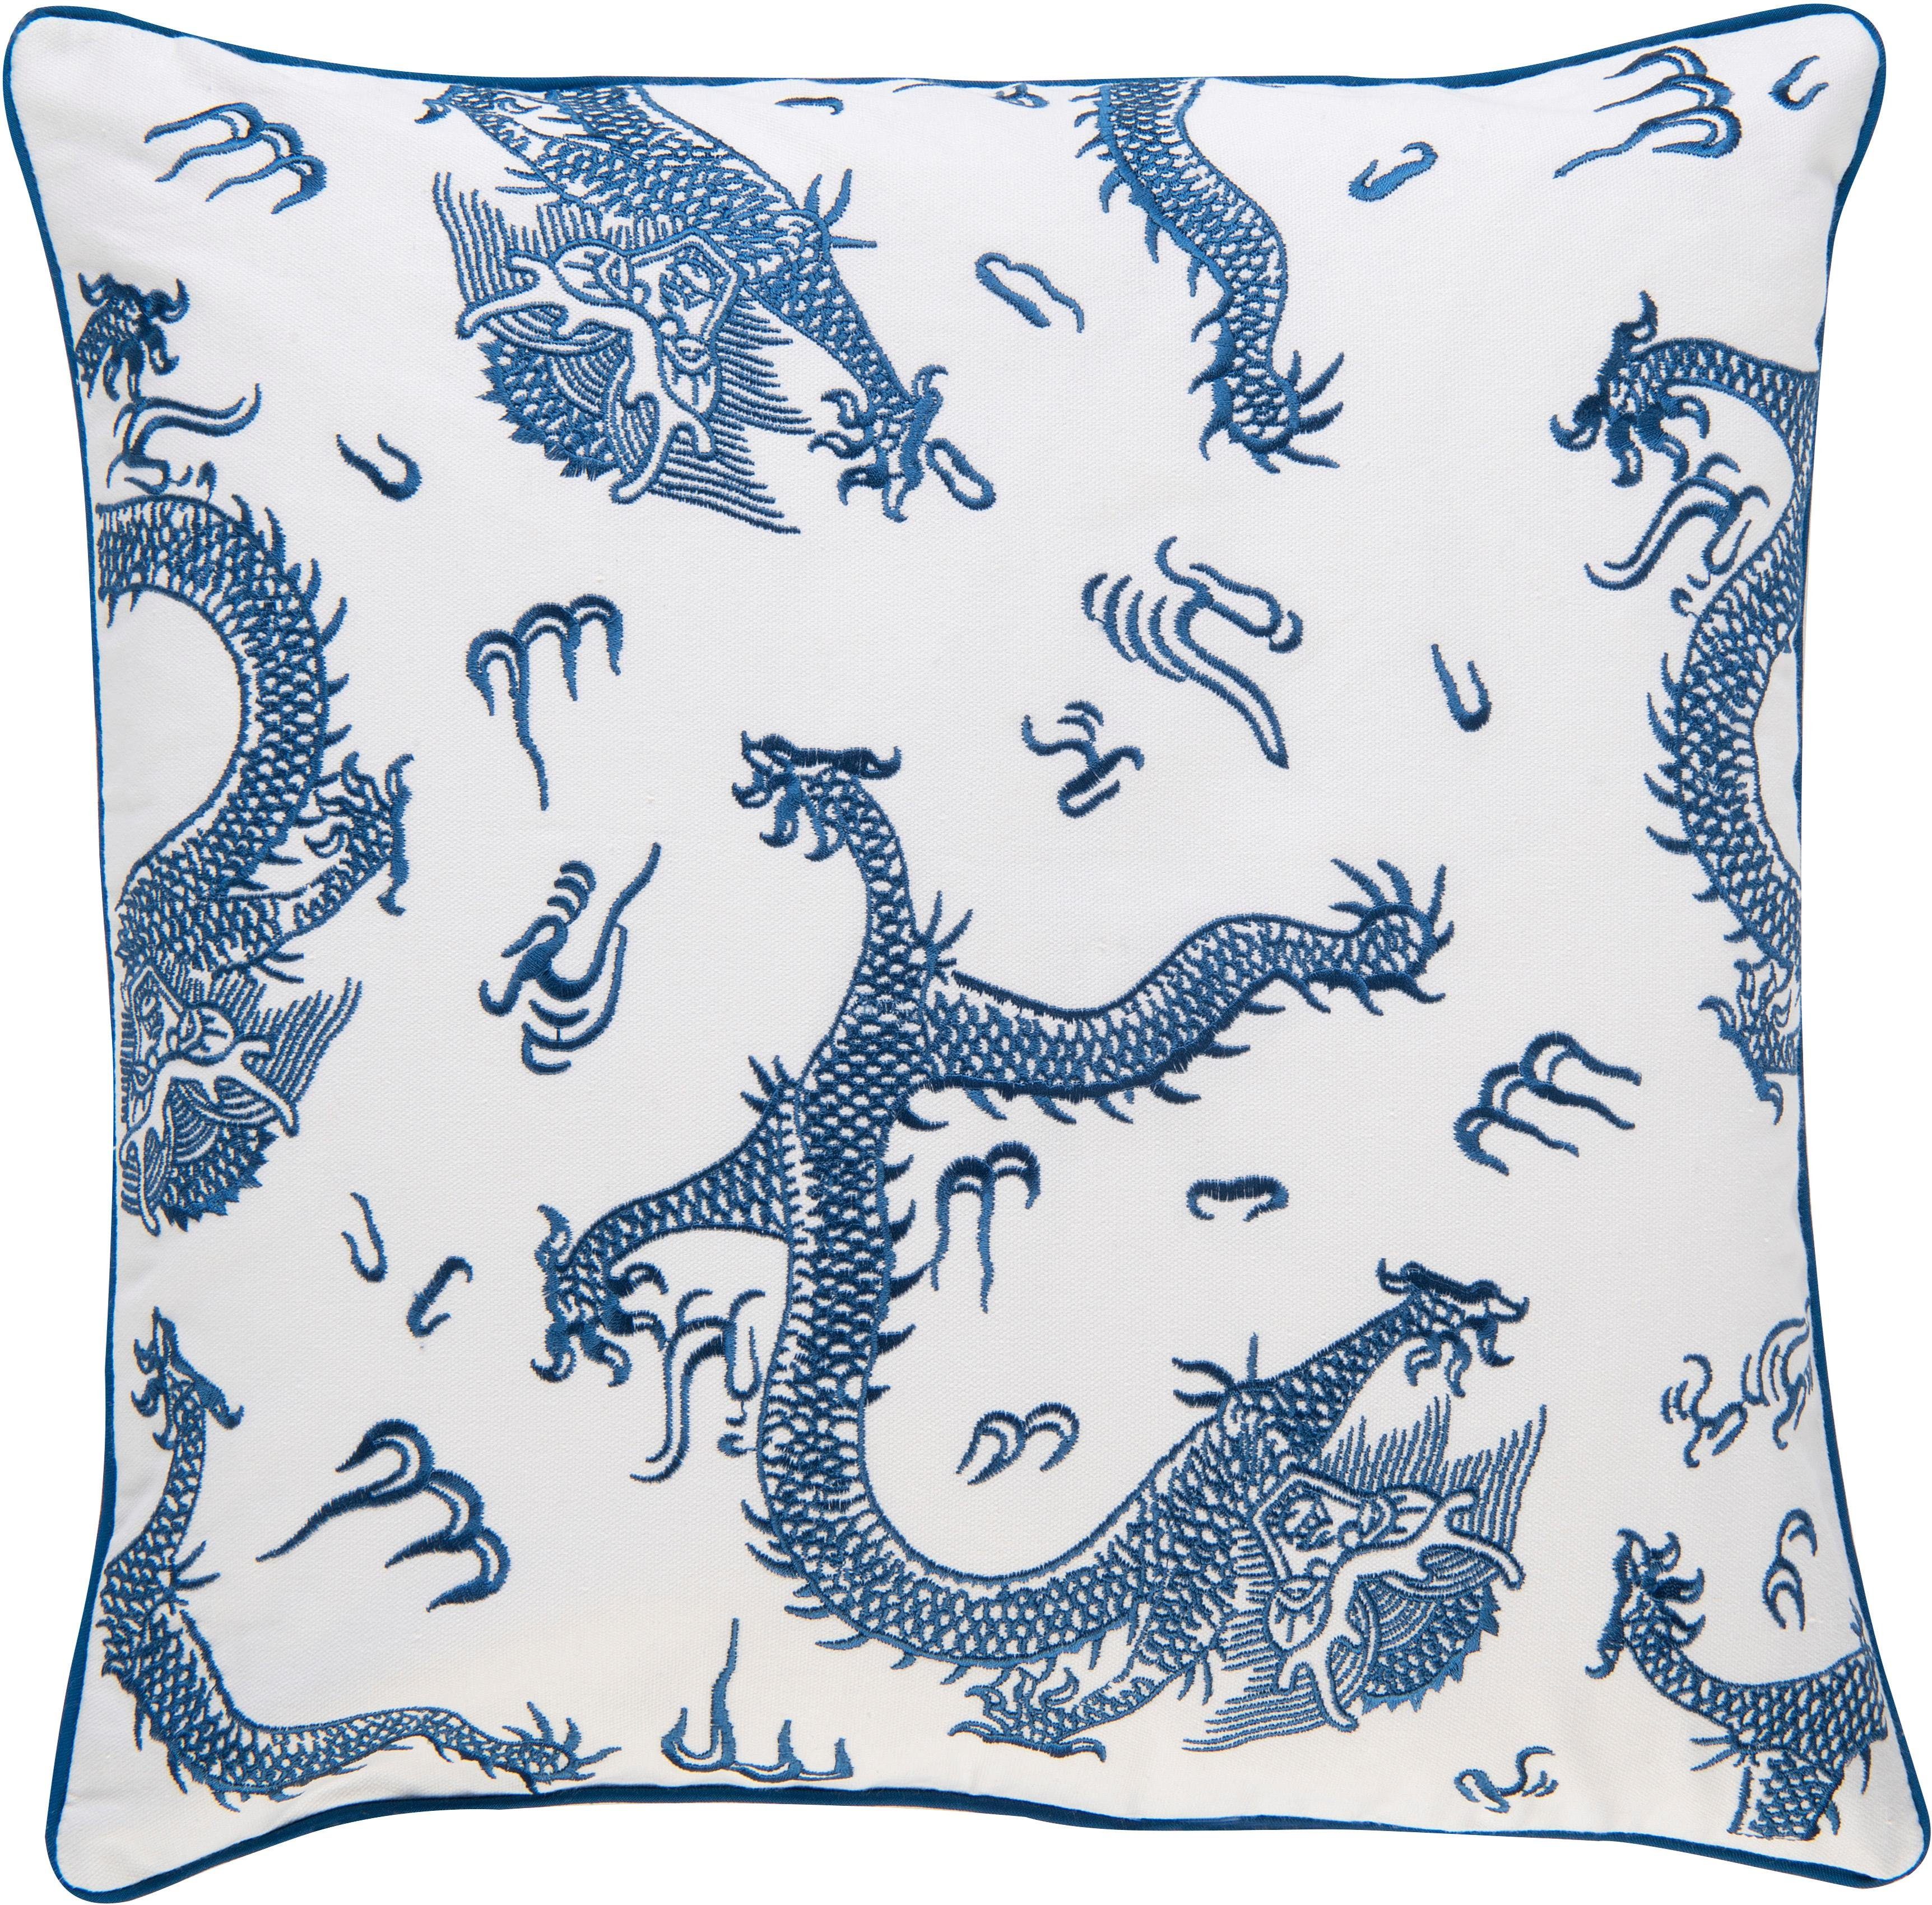 Home Füllung blau-weiß, Kissenhülle cm BARBARA Collection 50x50 aus Dekokissen Leinwandgewebe, ohne besticktem 01 Dragon